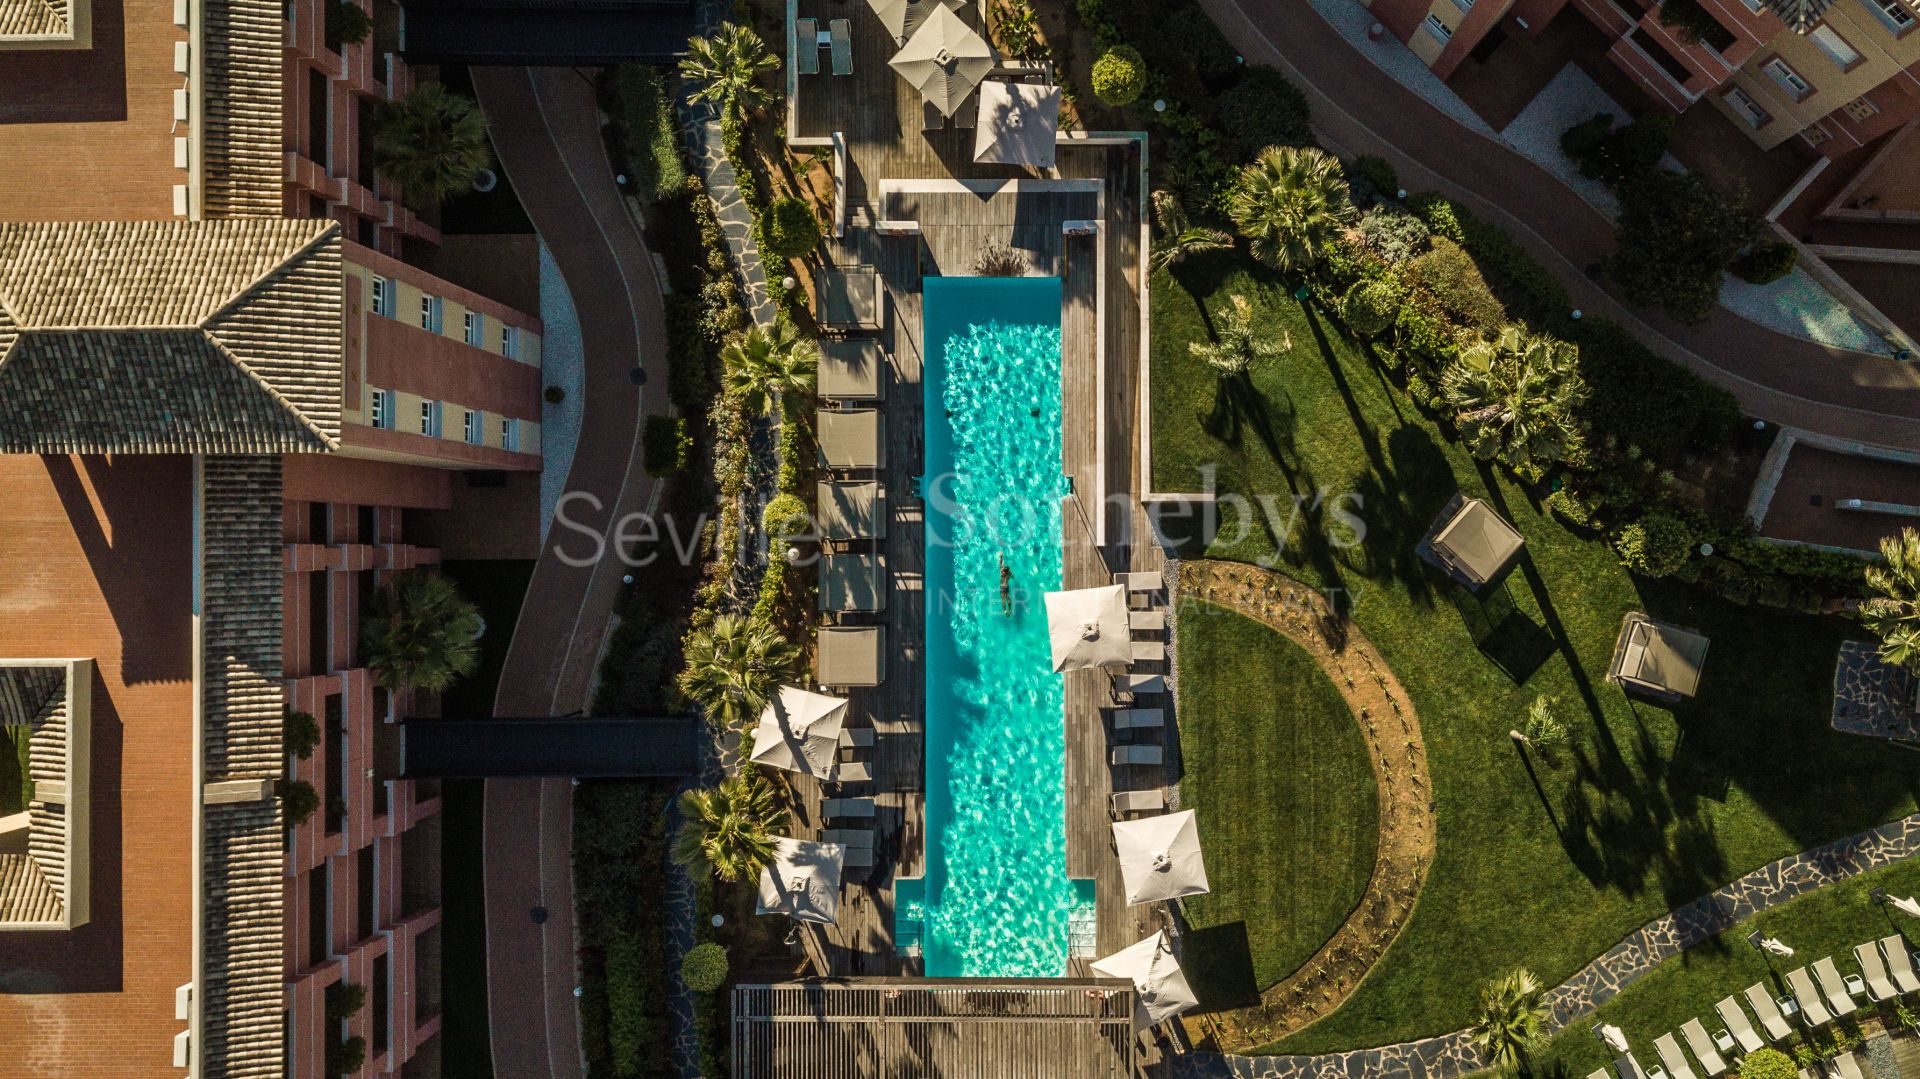 La Antilla - Islantilla - Villas y apartamentos en Urbanización privada tipo Resort con Golf en Islantilla